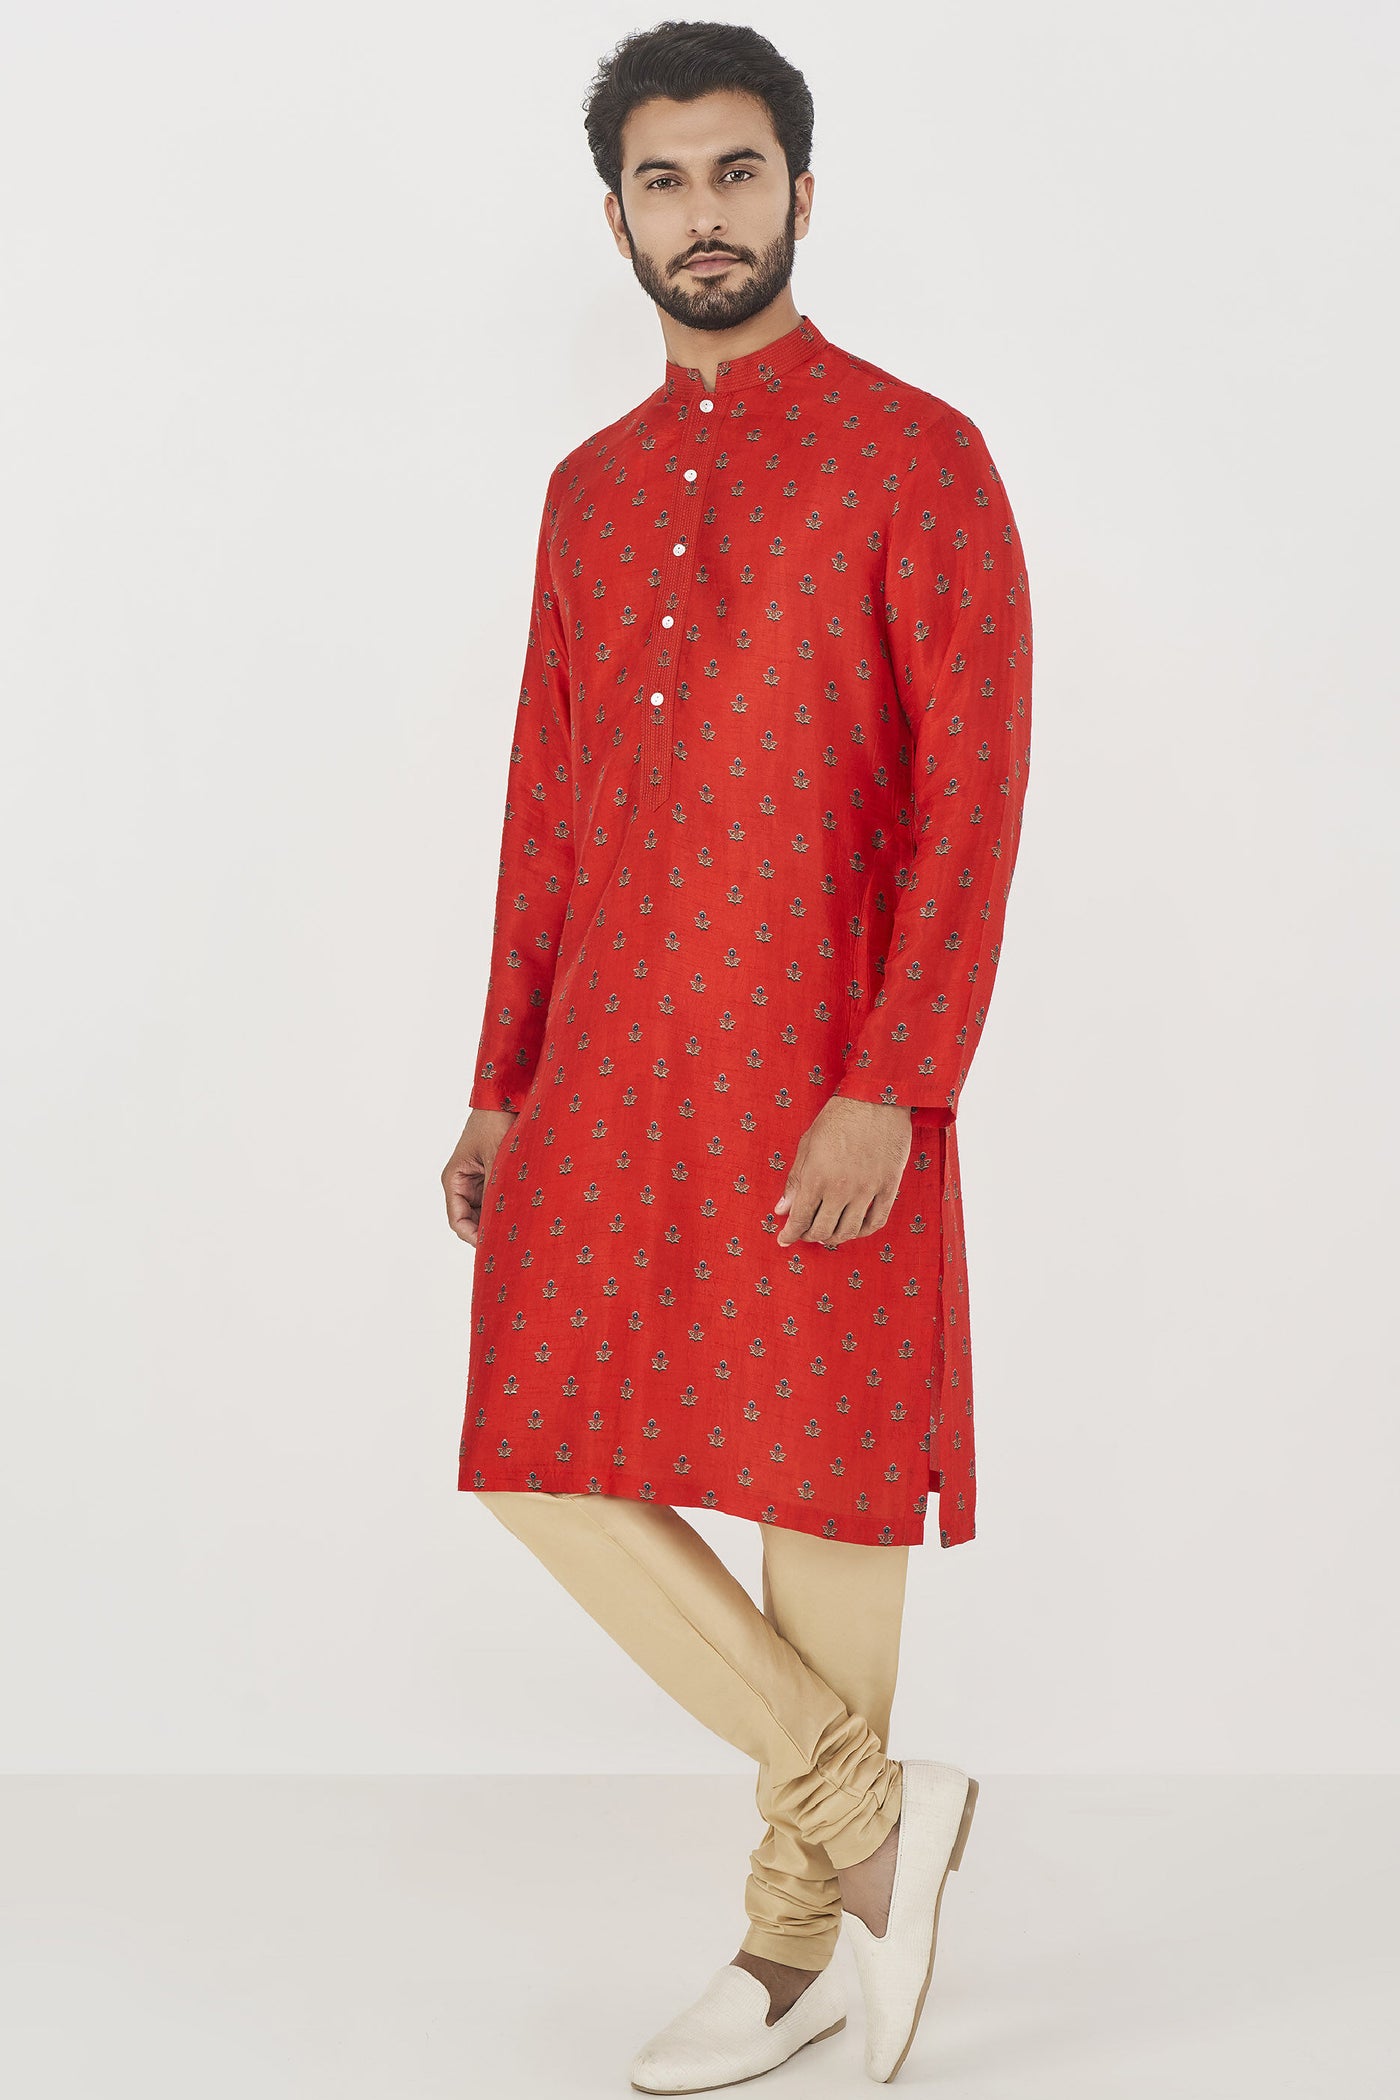 Anita Dongre Menswear Roshan Kurta Red Indian designer wear online shopping melange singapore